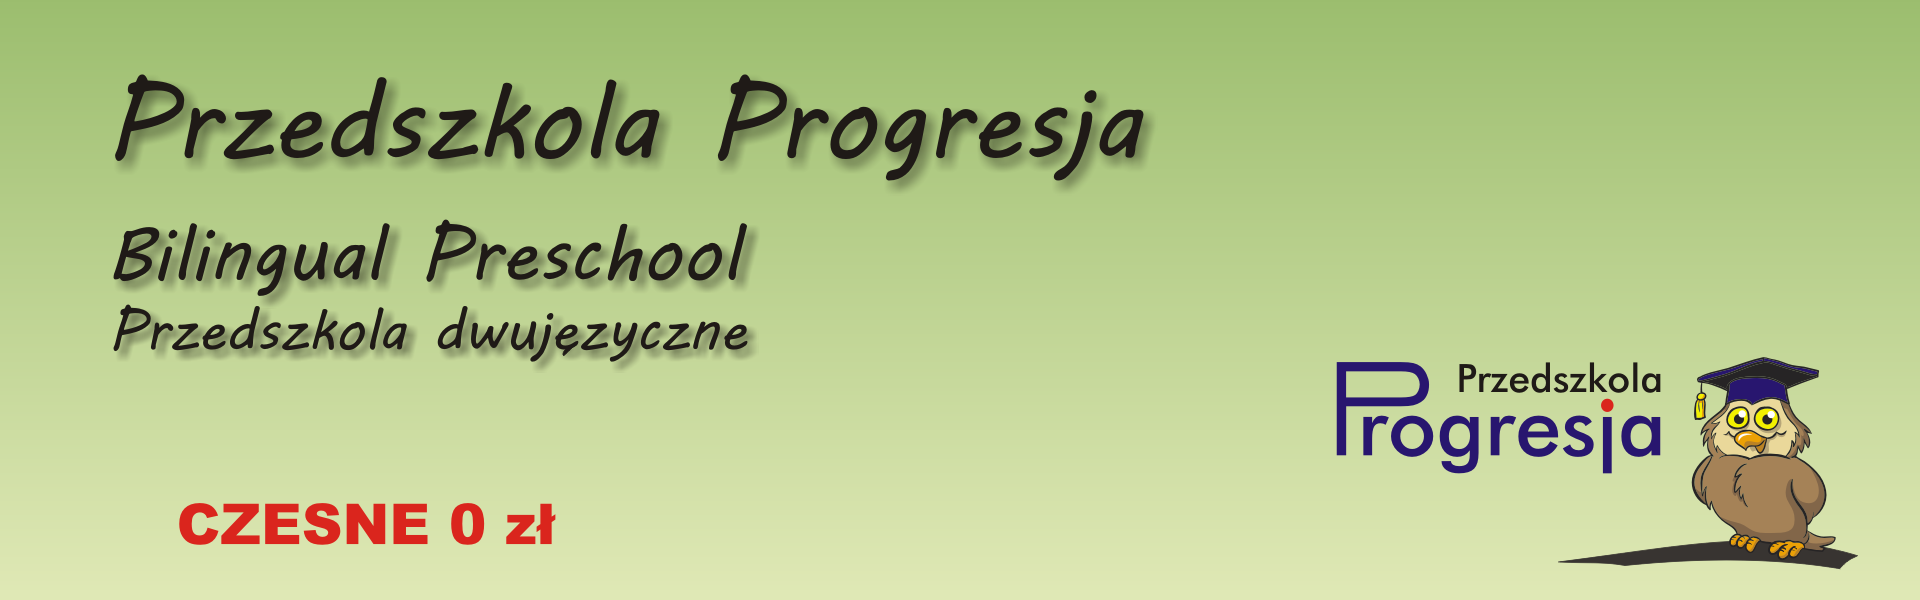 Baner przedszkola Progresja. Przedszkola Progresja, Bilingual Preschool, Przedszkola Dwujęzyczne, Czesne 0zł